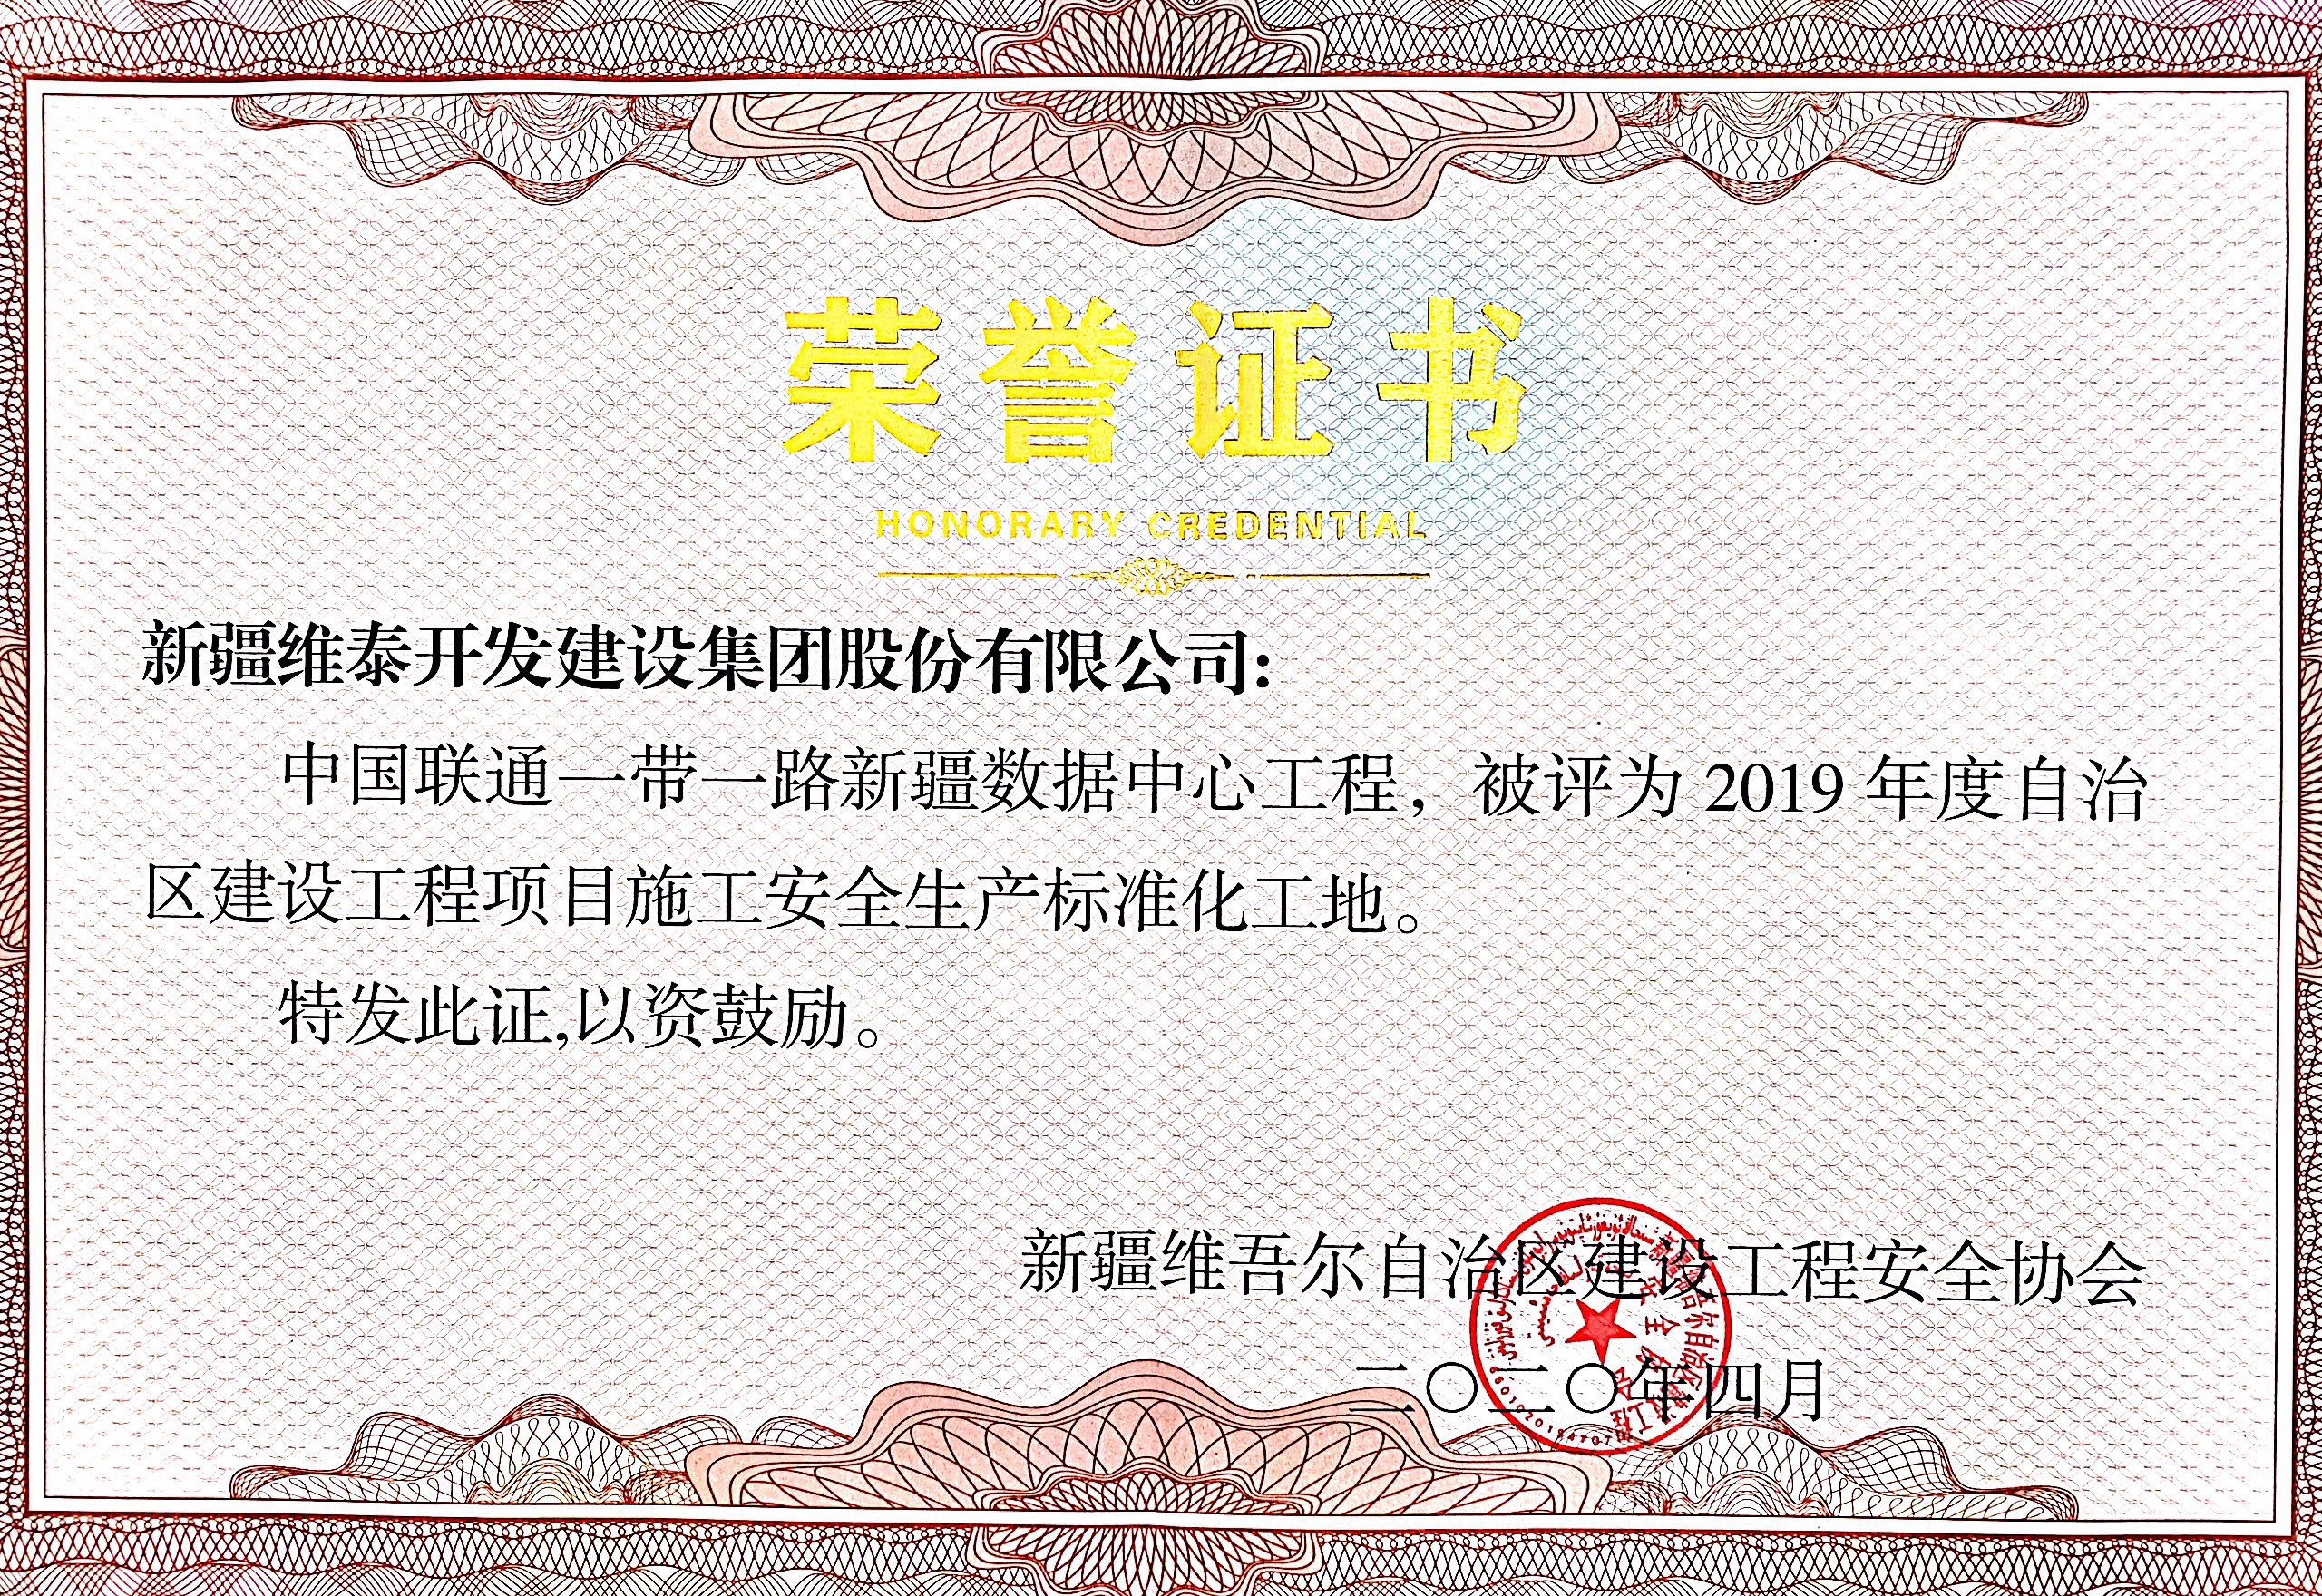 中国联通一带一路新疆数据中心荣获自治区安全生产标准化工地荣誉证书